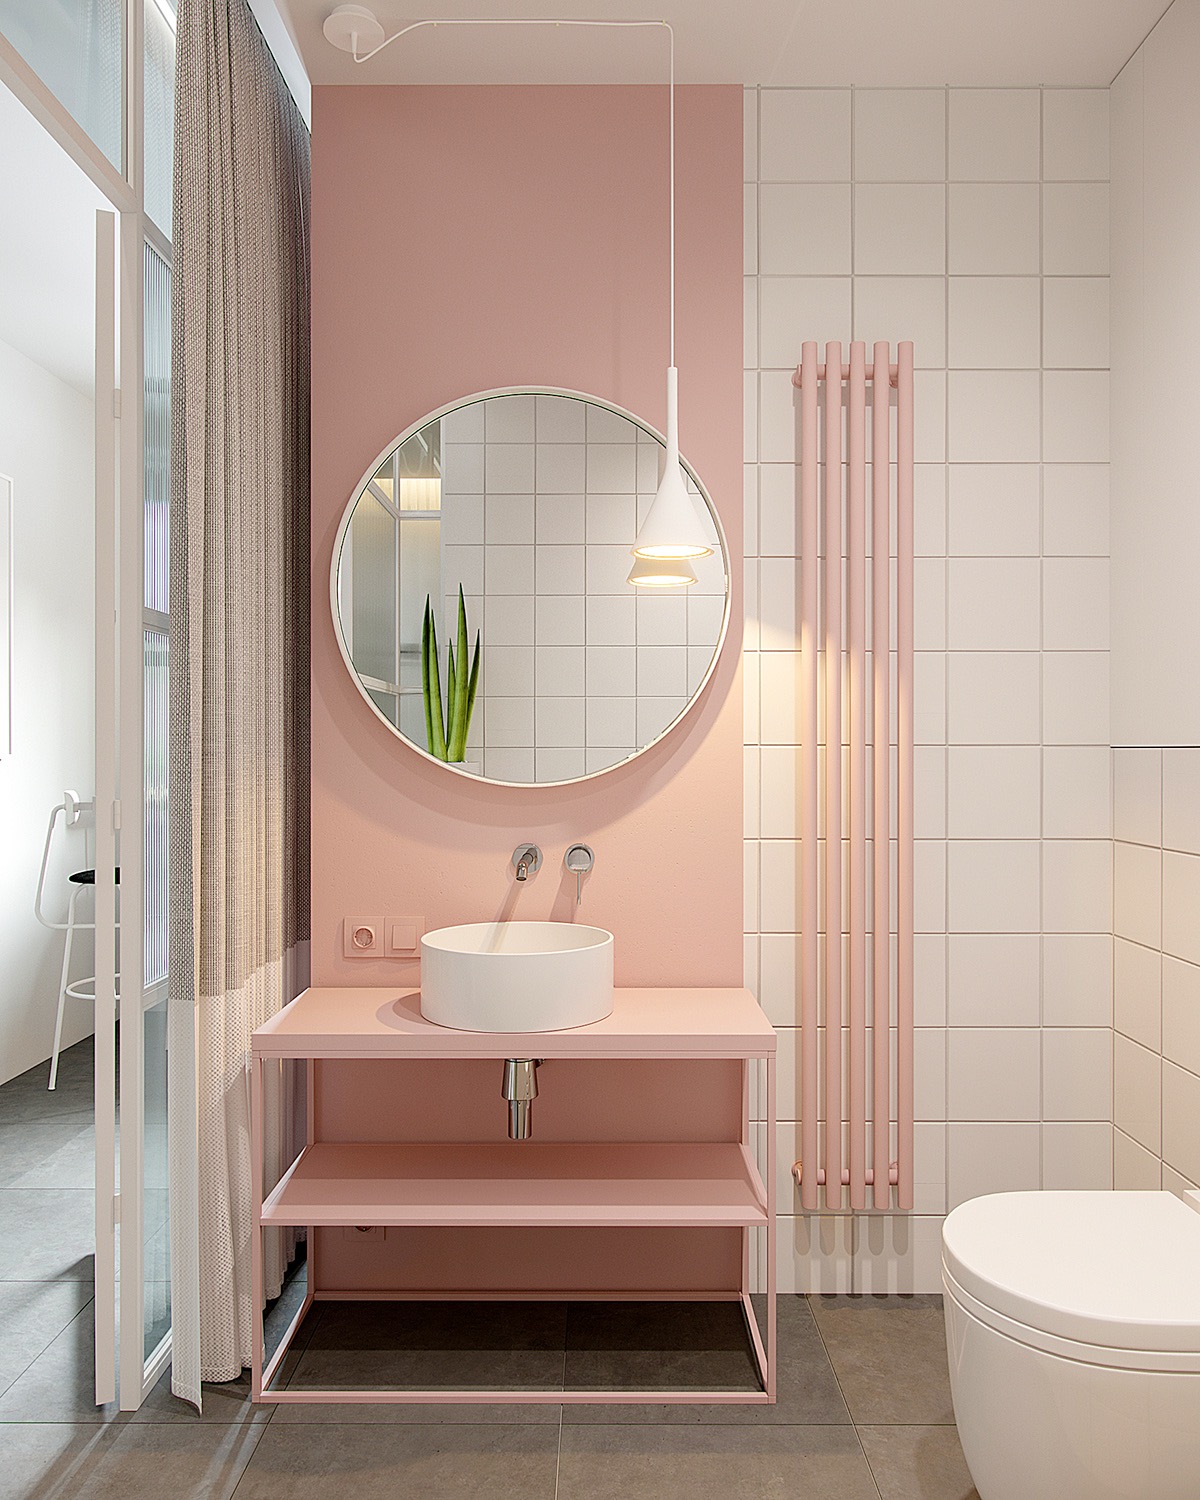 Sự lựa chọn màu hồng pastel kết hợp với màu trắng là giải pháp hoàn hảo giúp cho phòng tắm đẹp nhẹ nhàng nhưng không gây cảm giác sến. Từ sơn tường, kệ bồn rửa cho đến bộ tản nhiệt đều khiến người ta liên tưởng đến que kem dâu tây ngon lành.